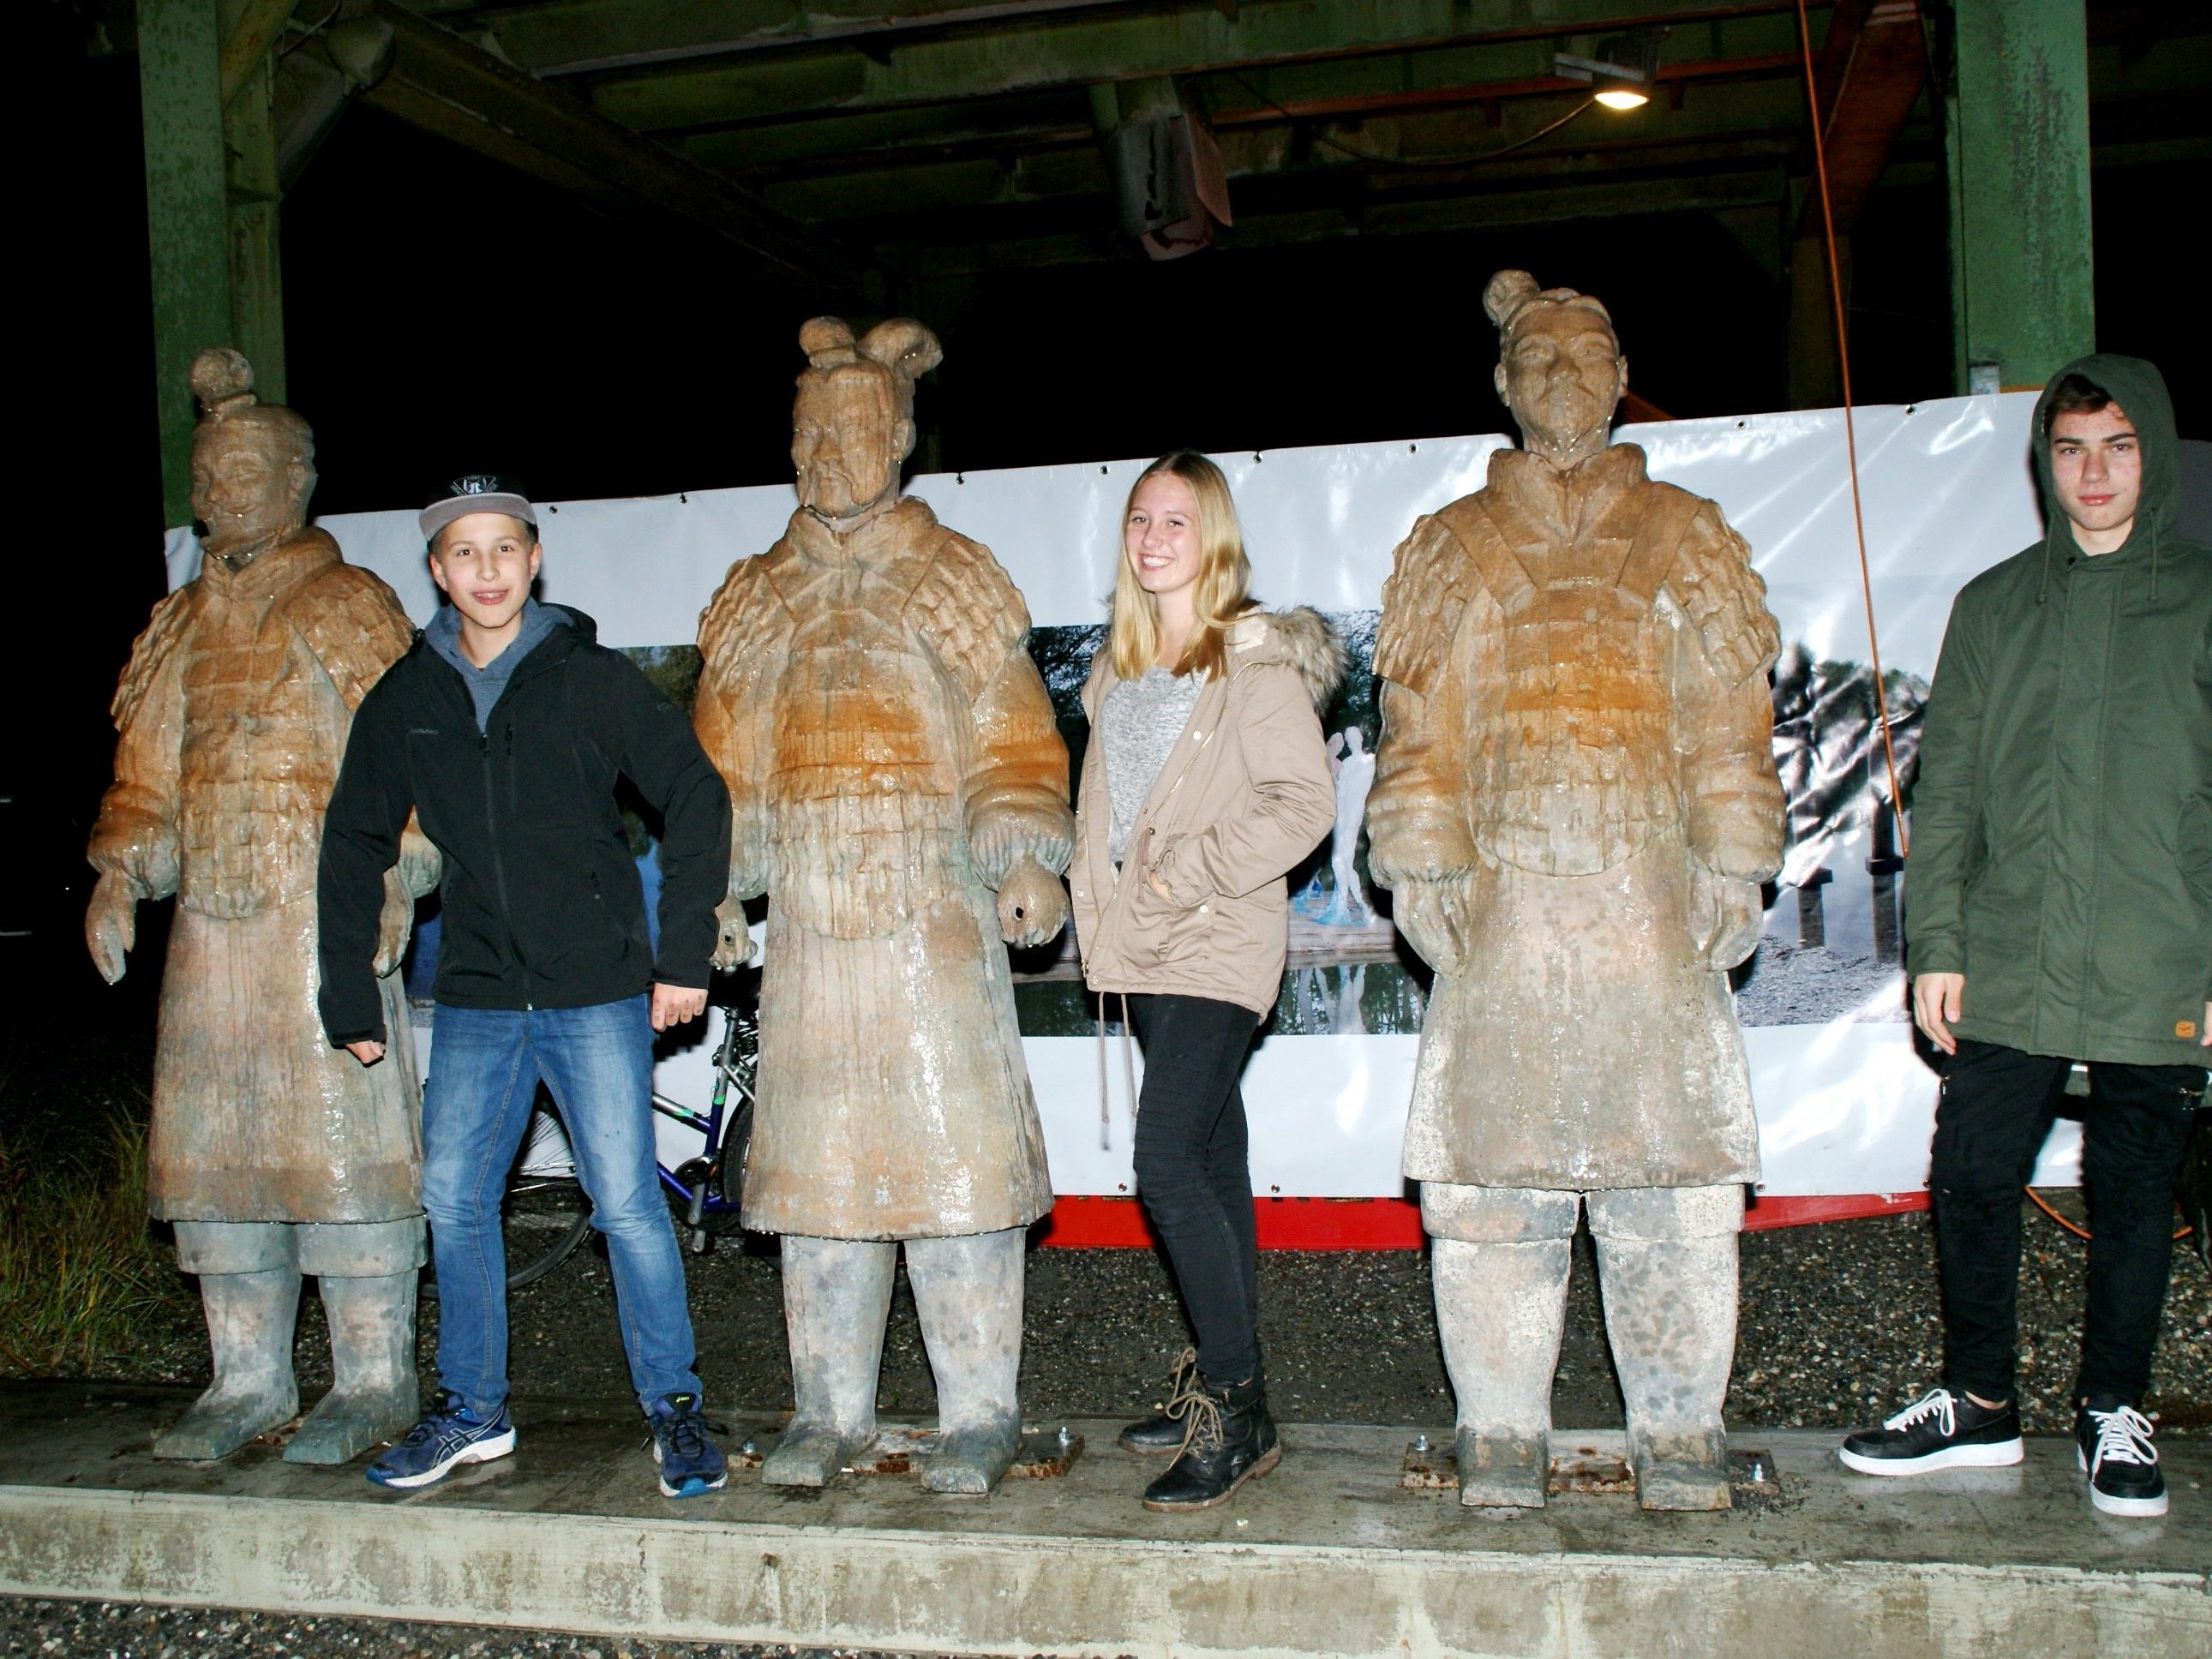 Laurin, Florian und Tabea bestaunten die lebensgroßen Skulpturen